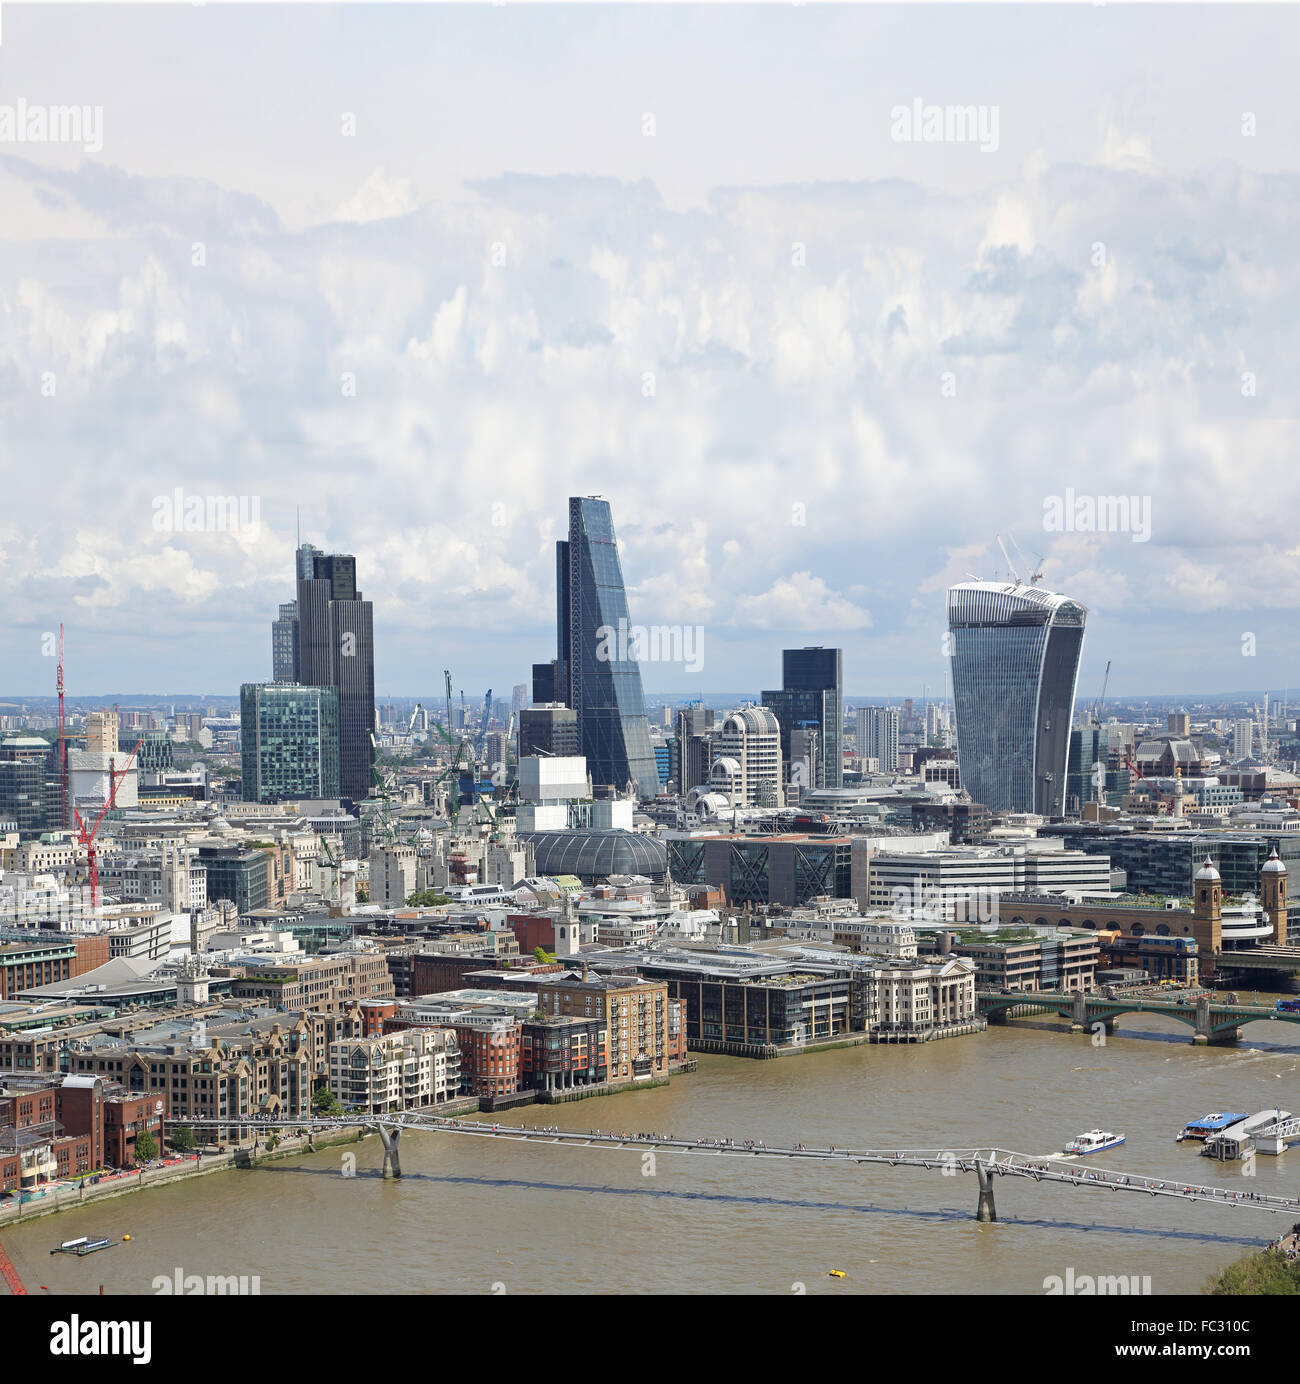 Grobe Sicht auf die City of London. Tower 42 (links) Cheesegrater (Mitte) Walkie-talkie (rechts), Millennium Bridge (unten) Stockfoto